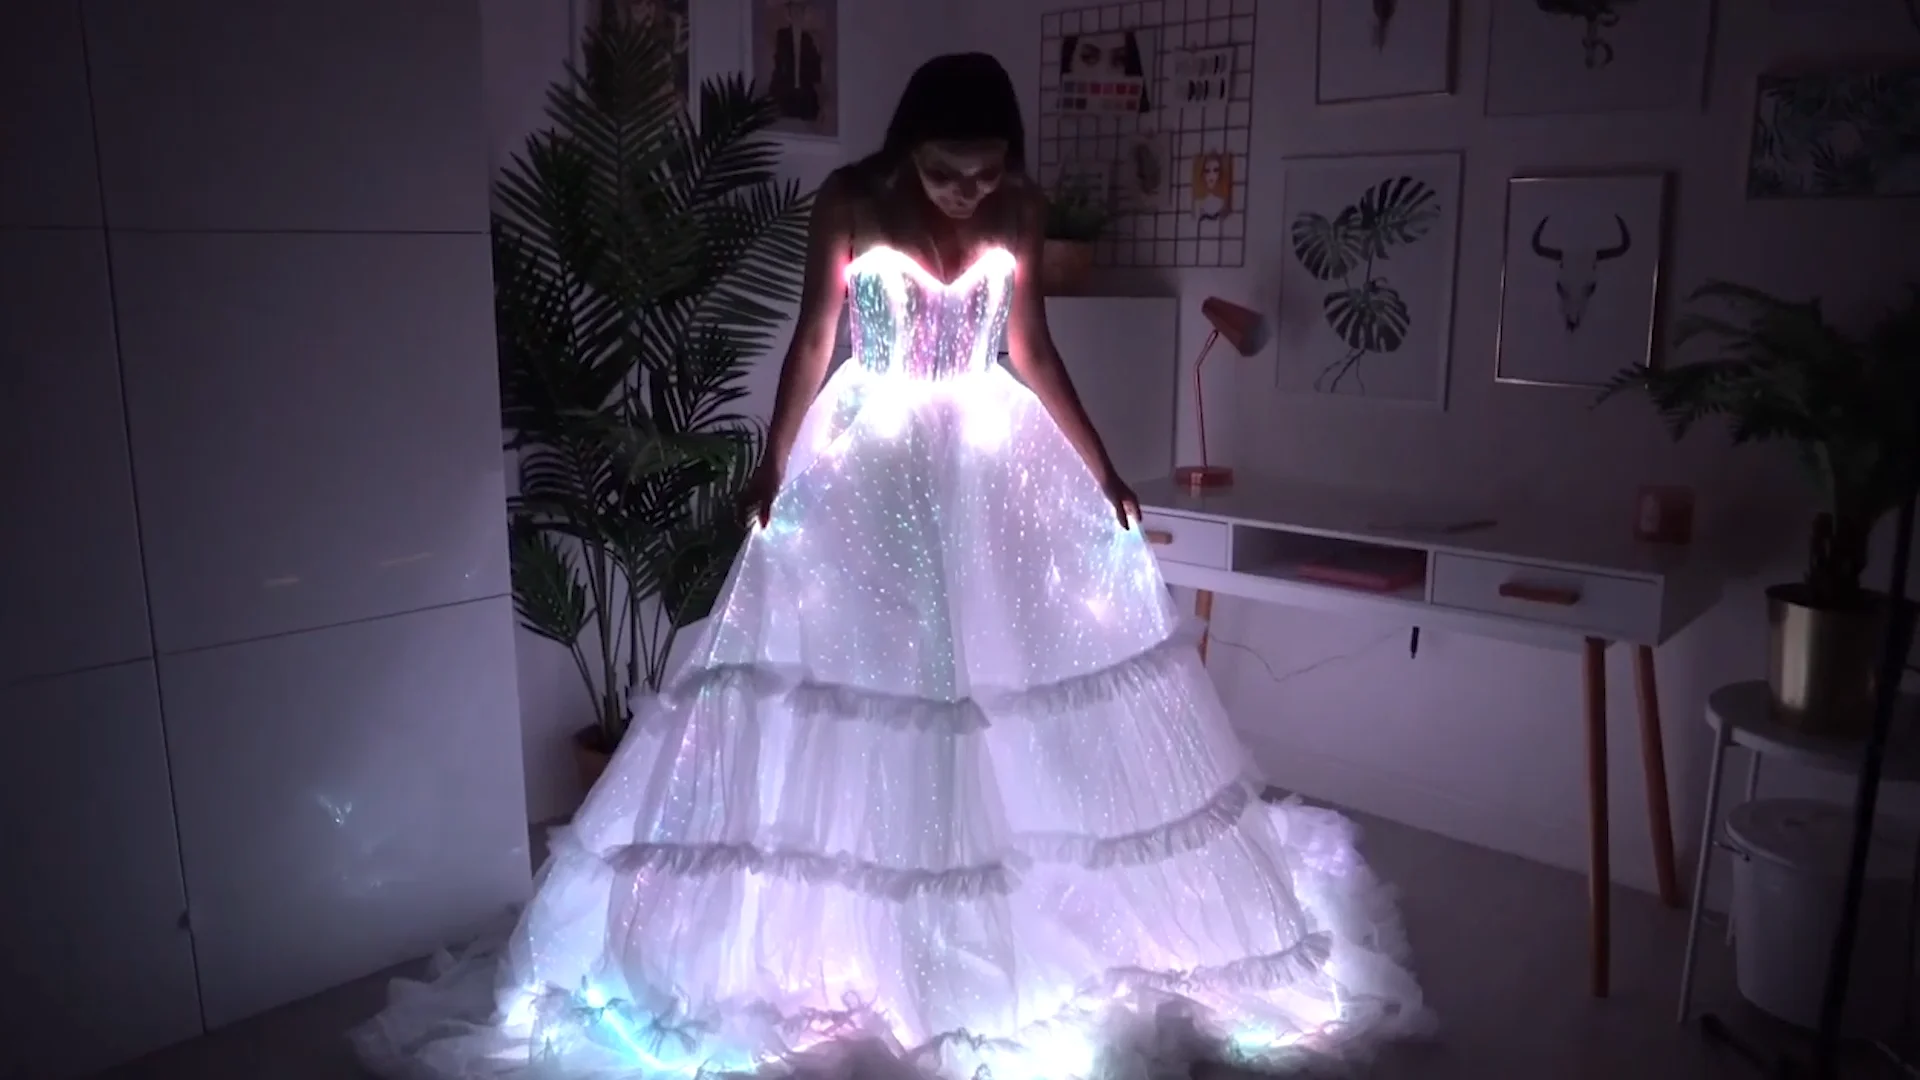 Eclairage led à pile sur une robe de mariée